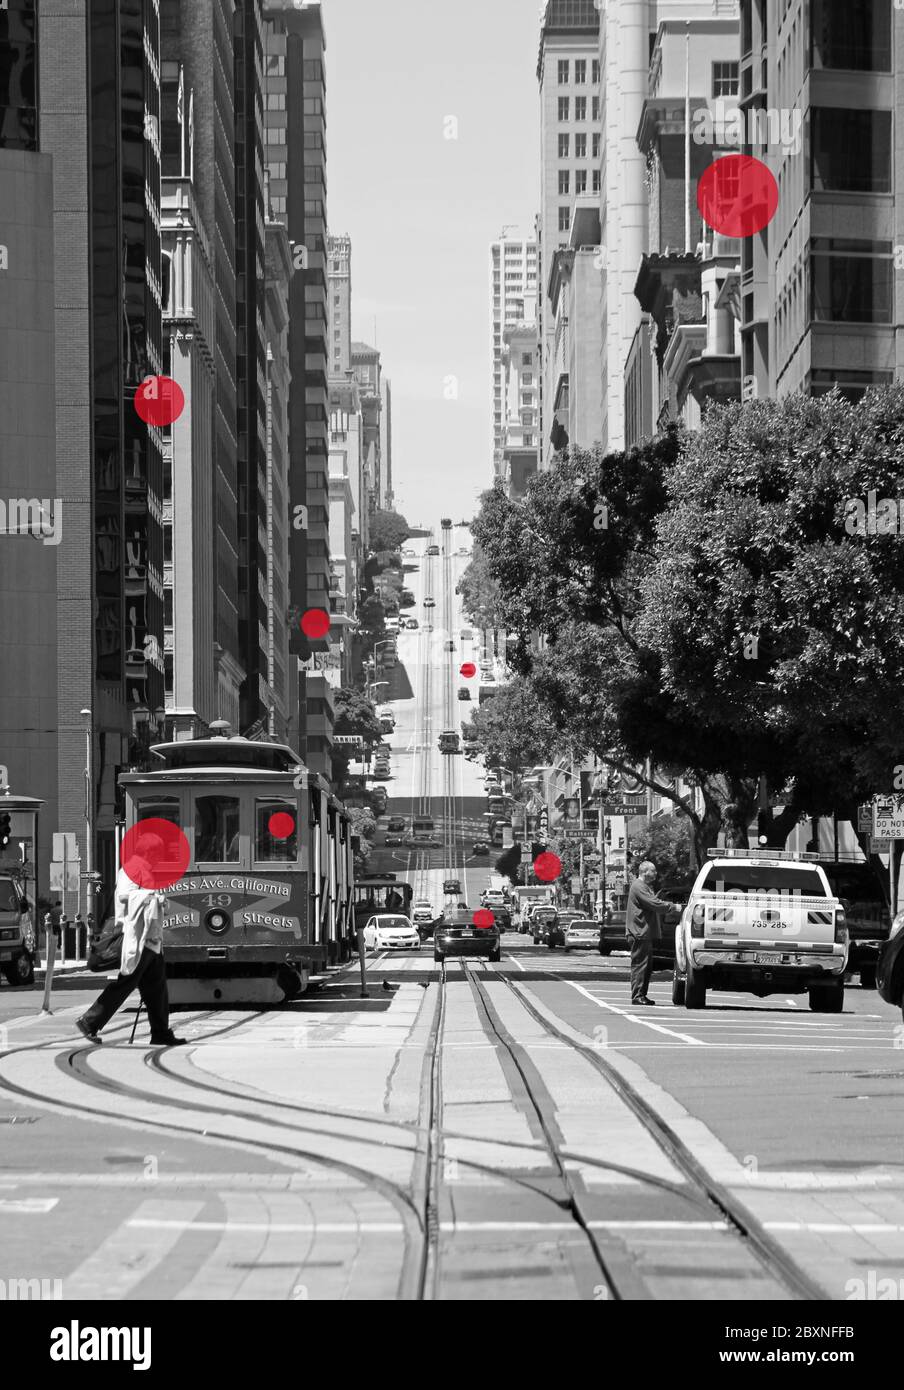 San Francisco, USA - 12. Februar 2020: Eine geschäftige Straße in der Innenstadt von San Francisco mit roten Kreisen, die eine ansteckende Person symbolisieren. Stockfoto